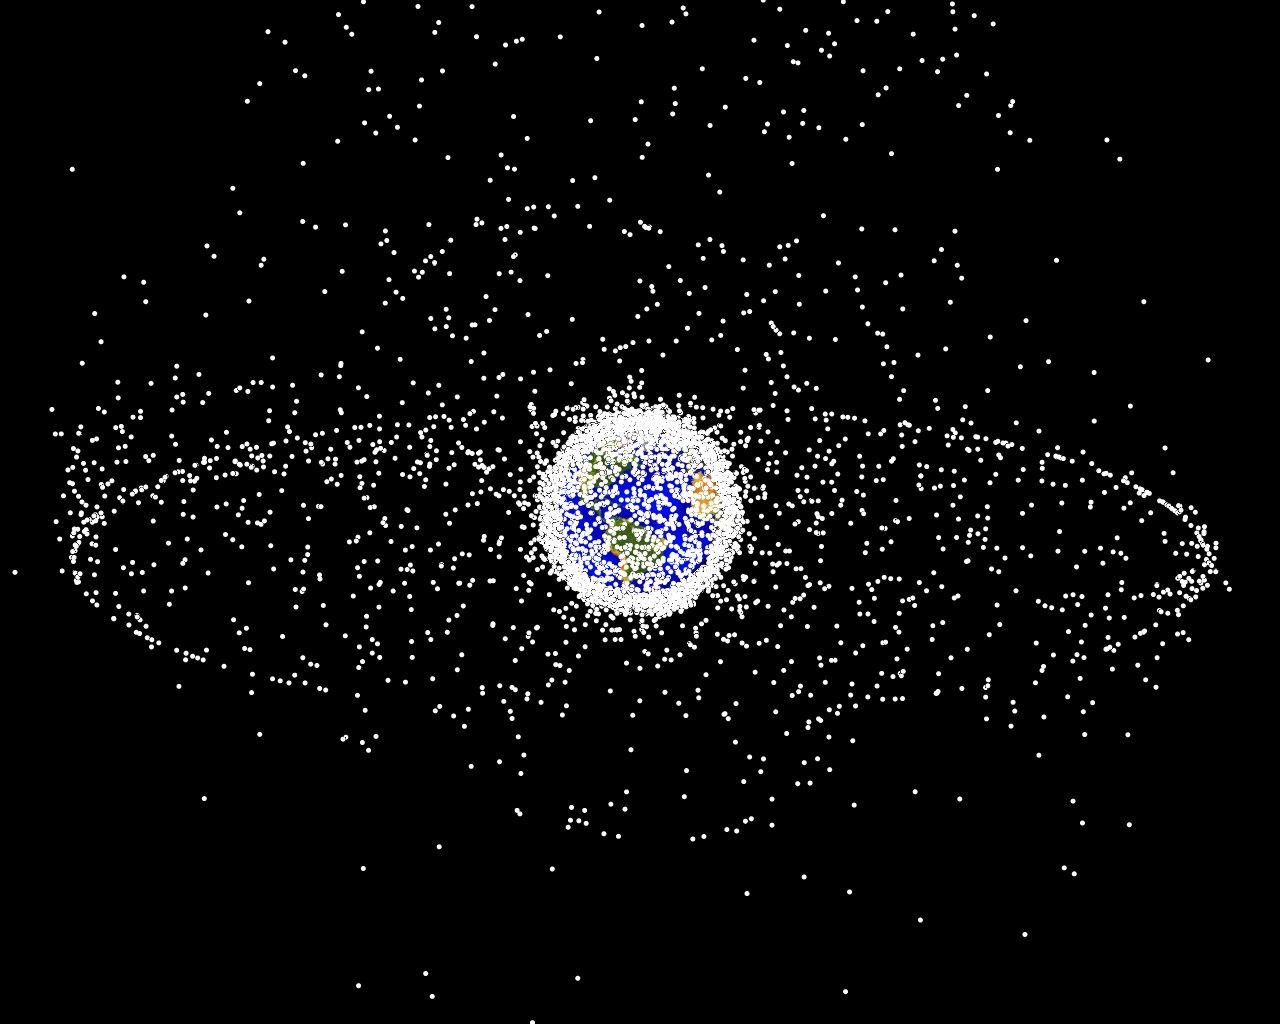 Астрономы считают интернет-спутники SpaceX Starlink угрозой для космических исследований